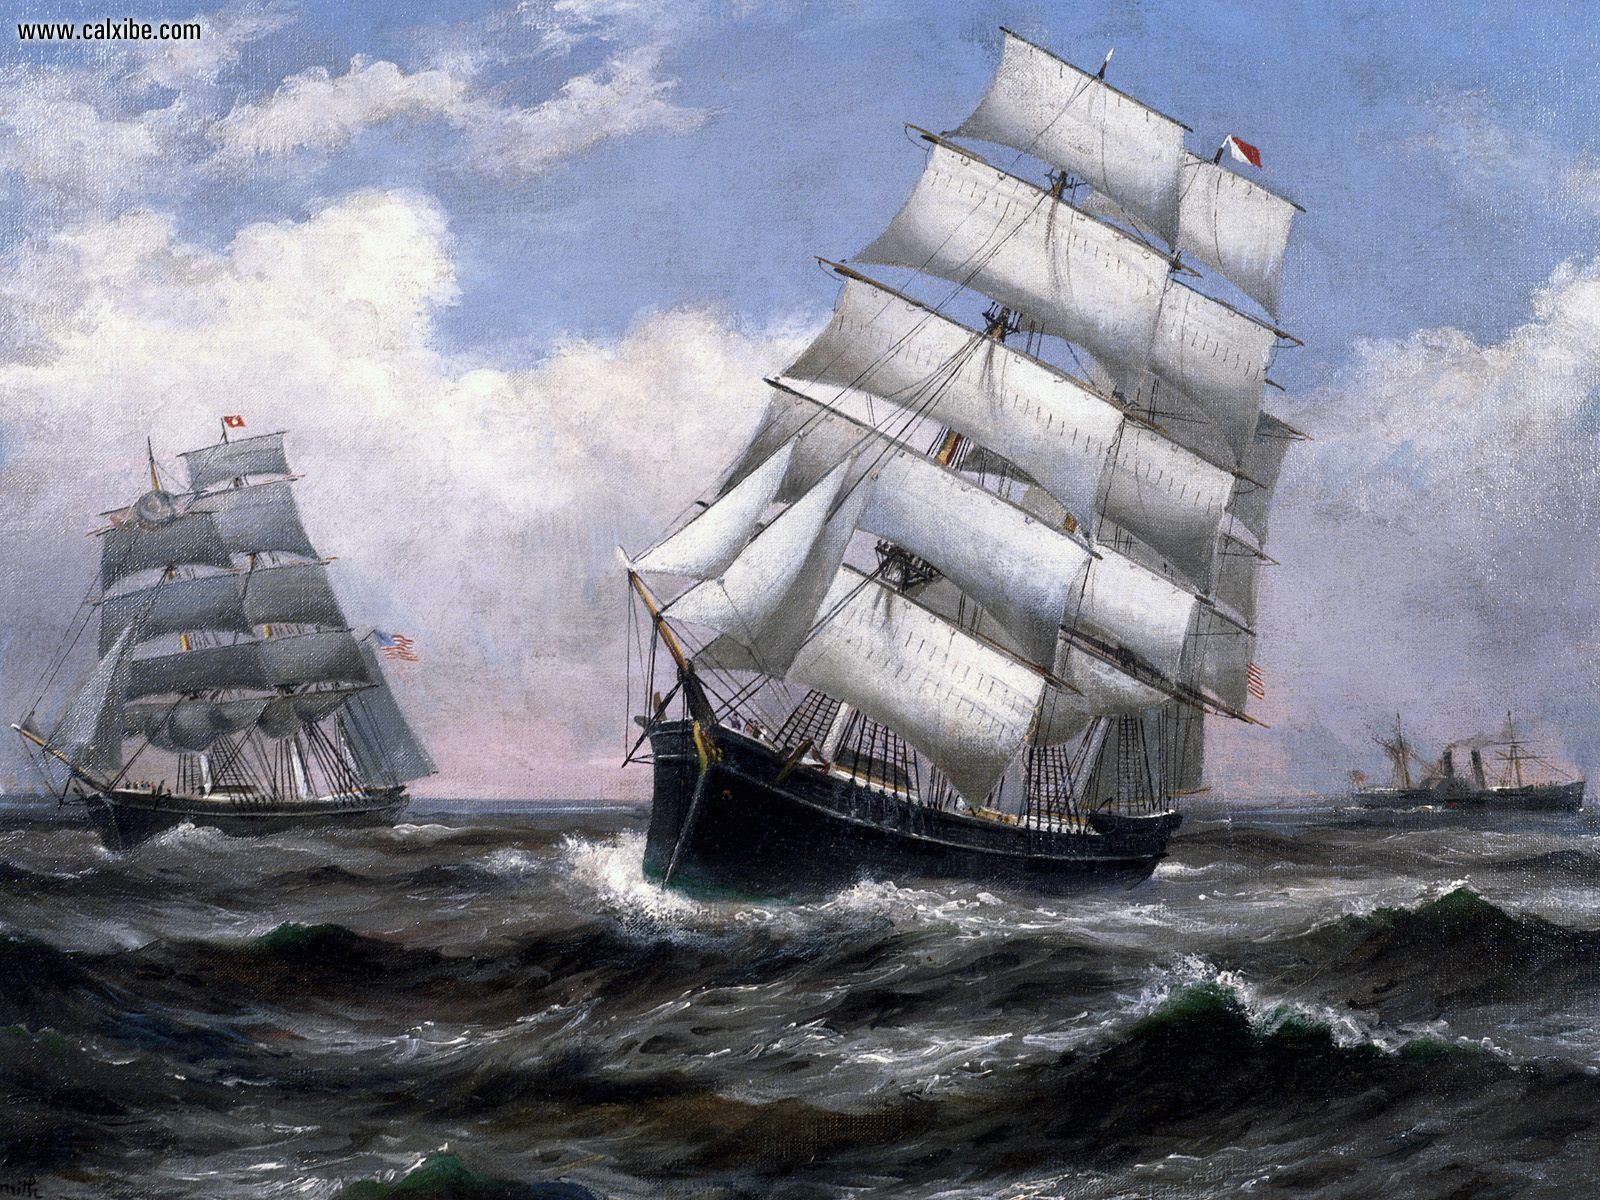 Sailing ship wallpaper